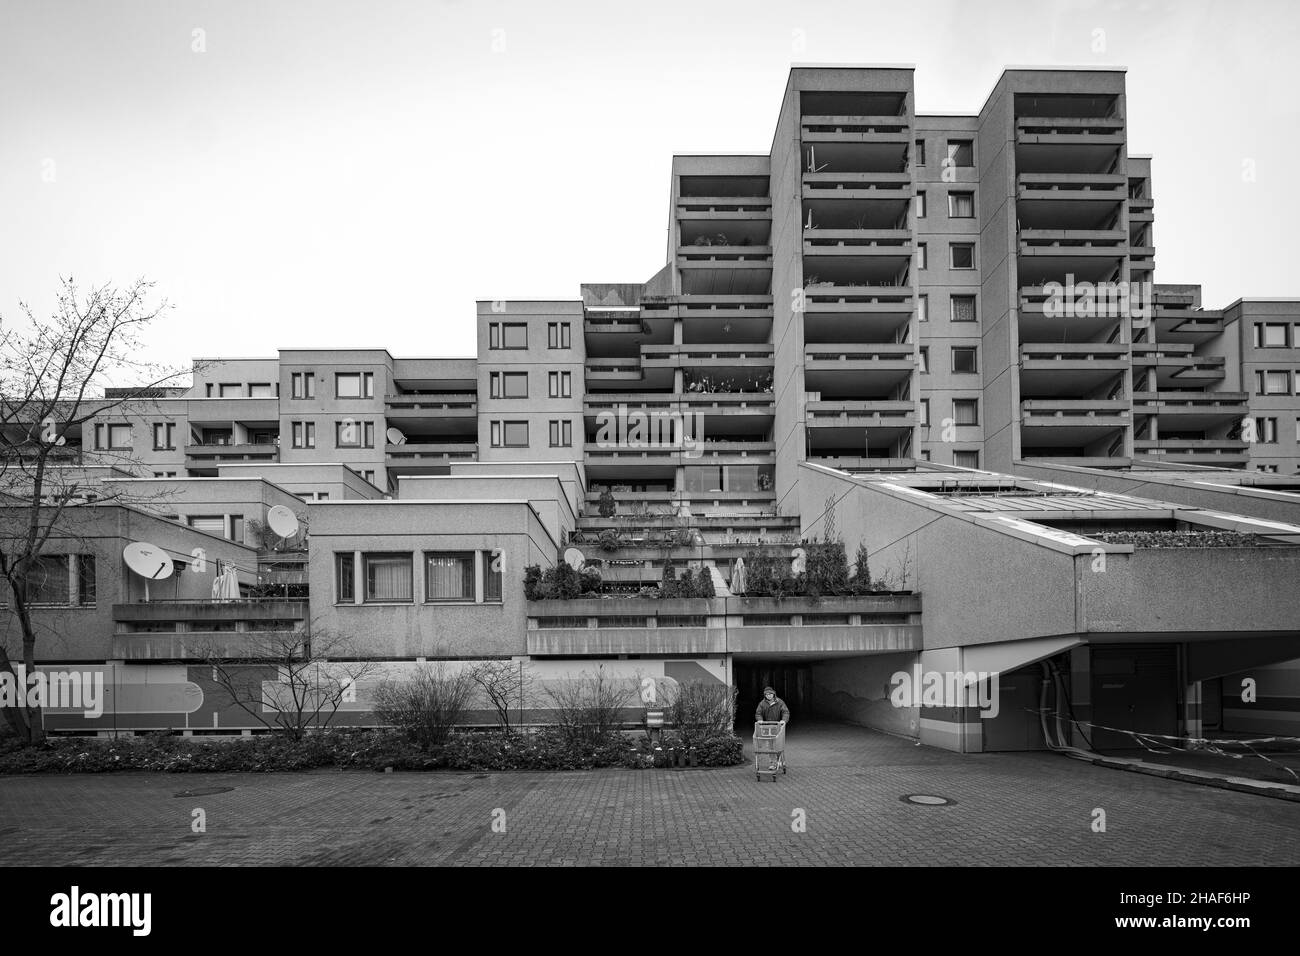 Schöneberger Terrassen, Berlín. Sozialer Wohnungsbau der 1970er Jahre Foto de stock